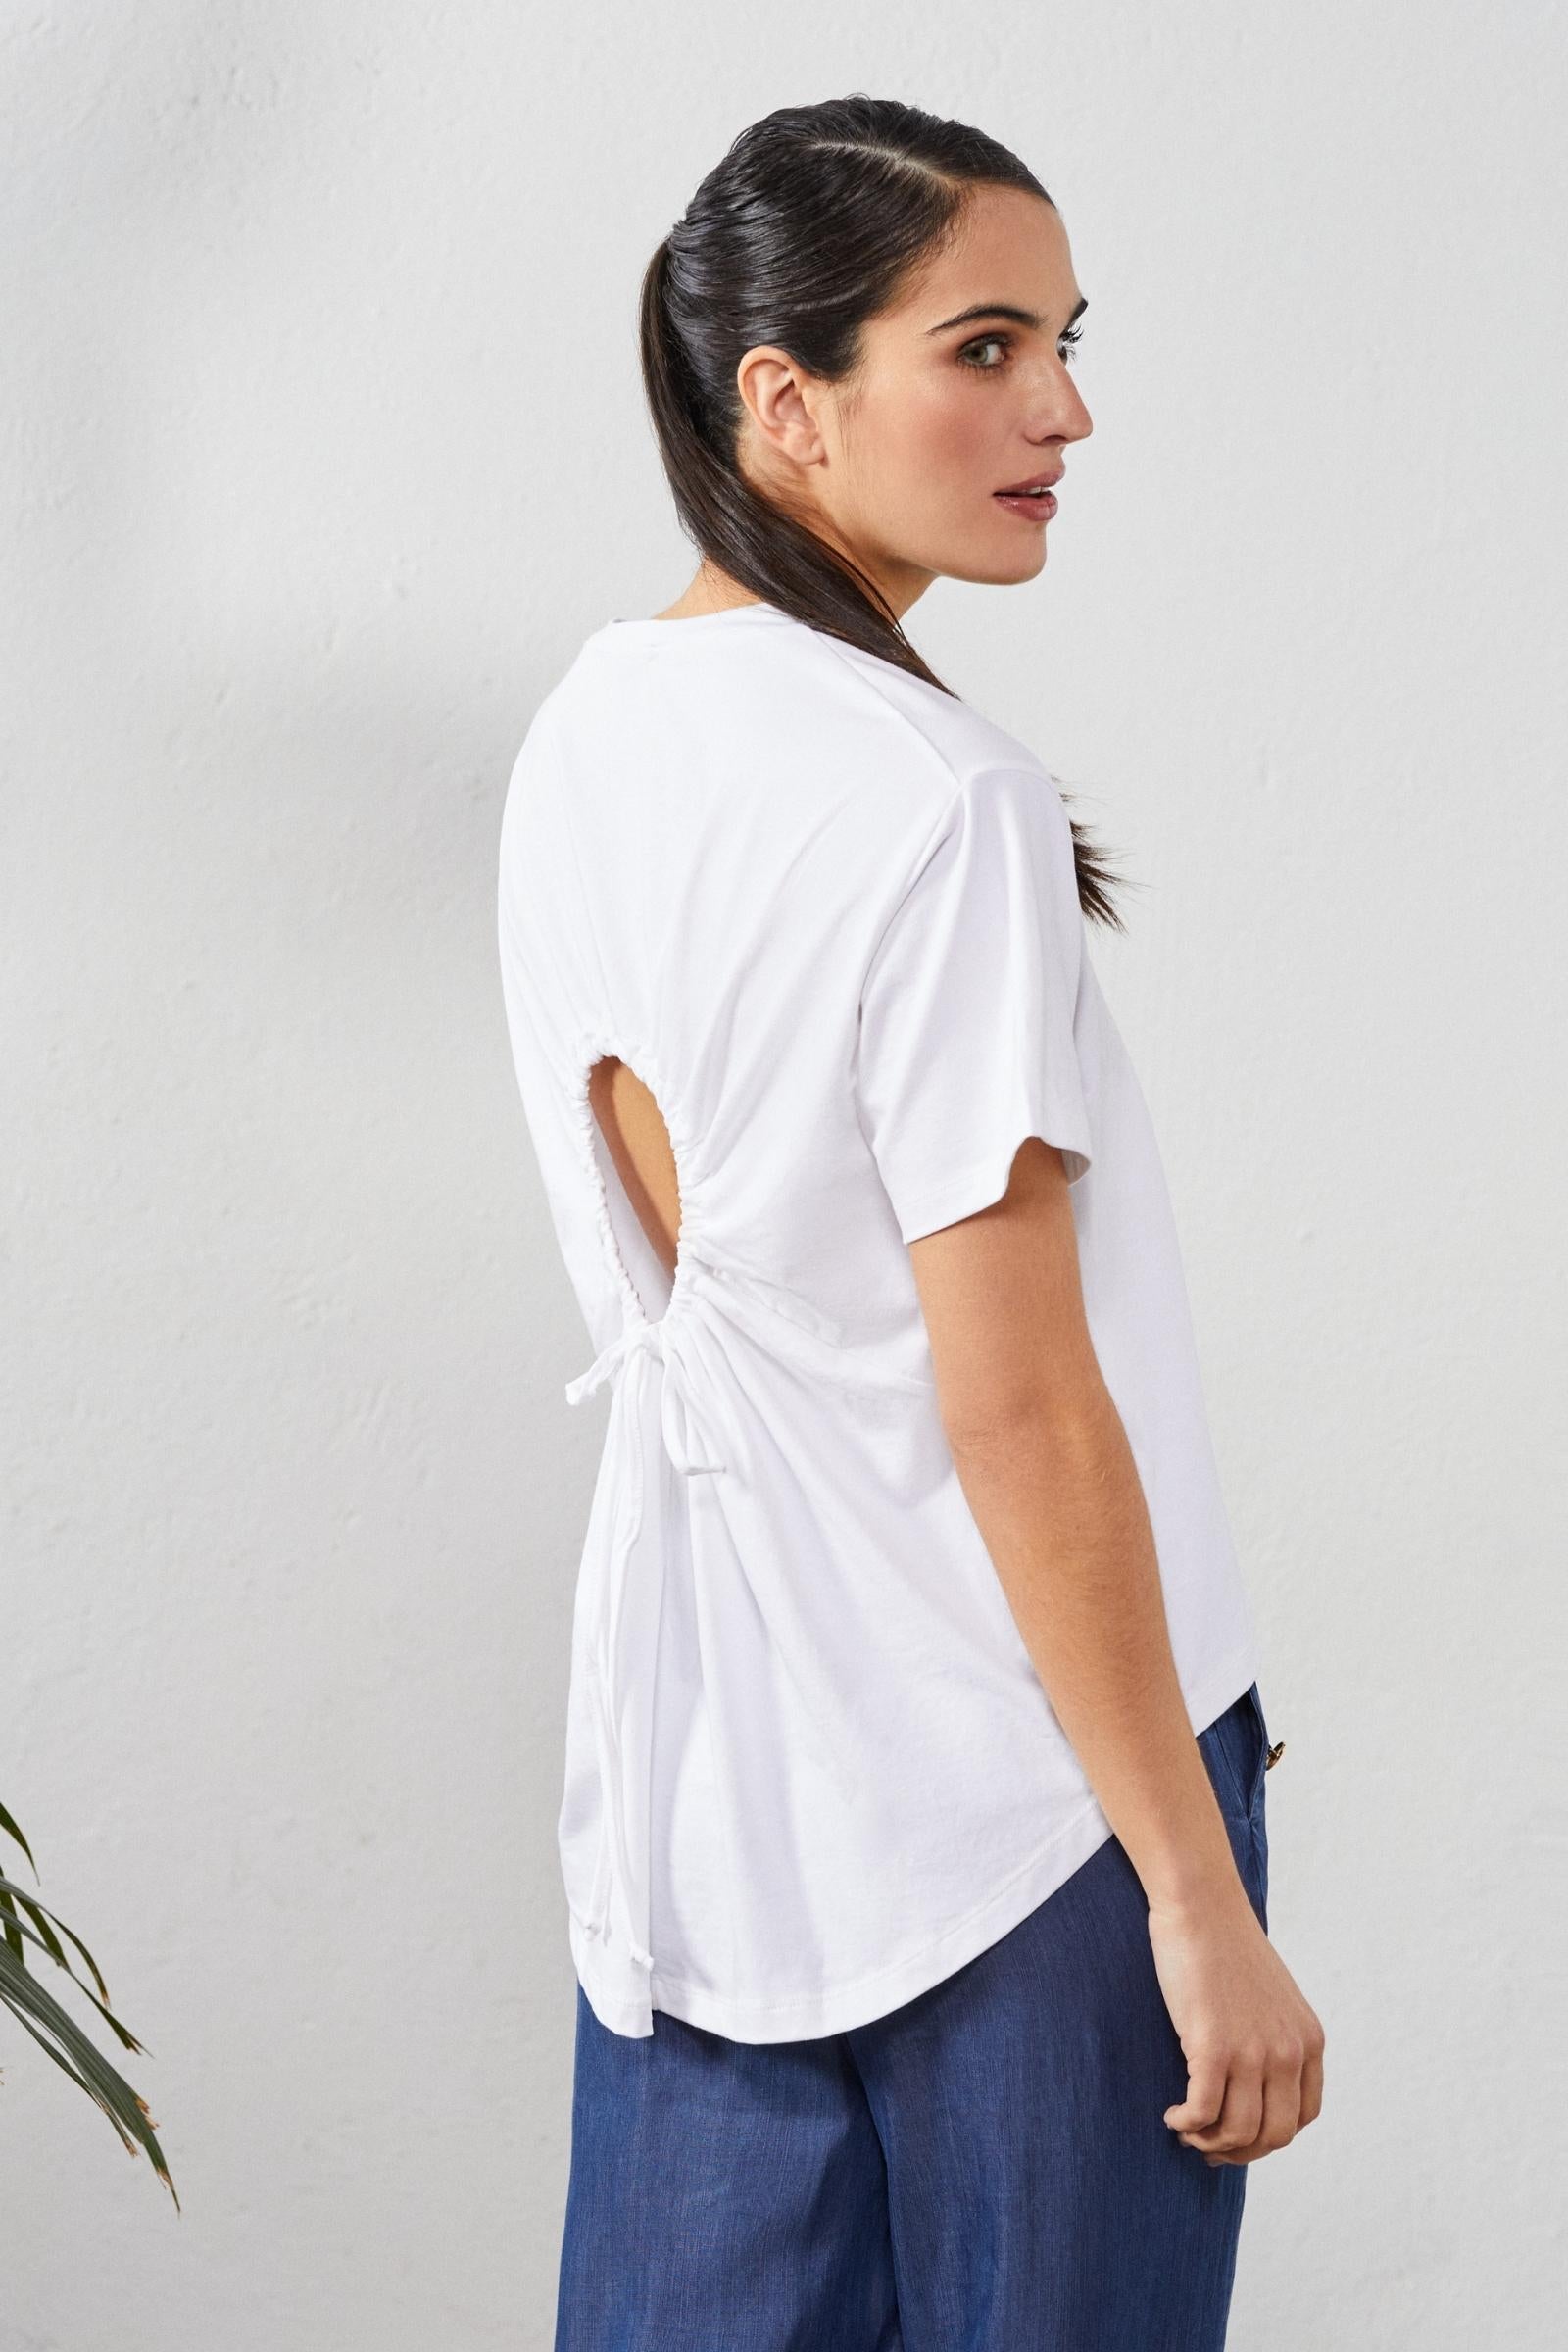 Camiseta blanca con flor bordada y abertura en espalda - lolitasyl.com